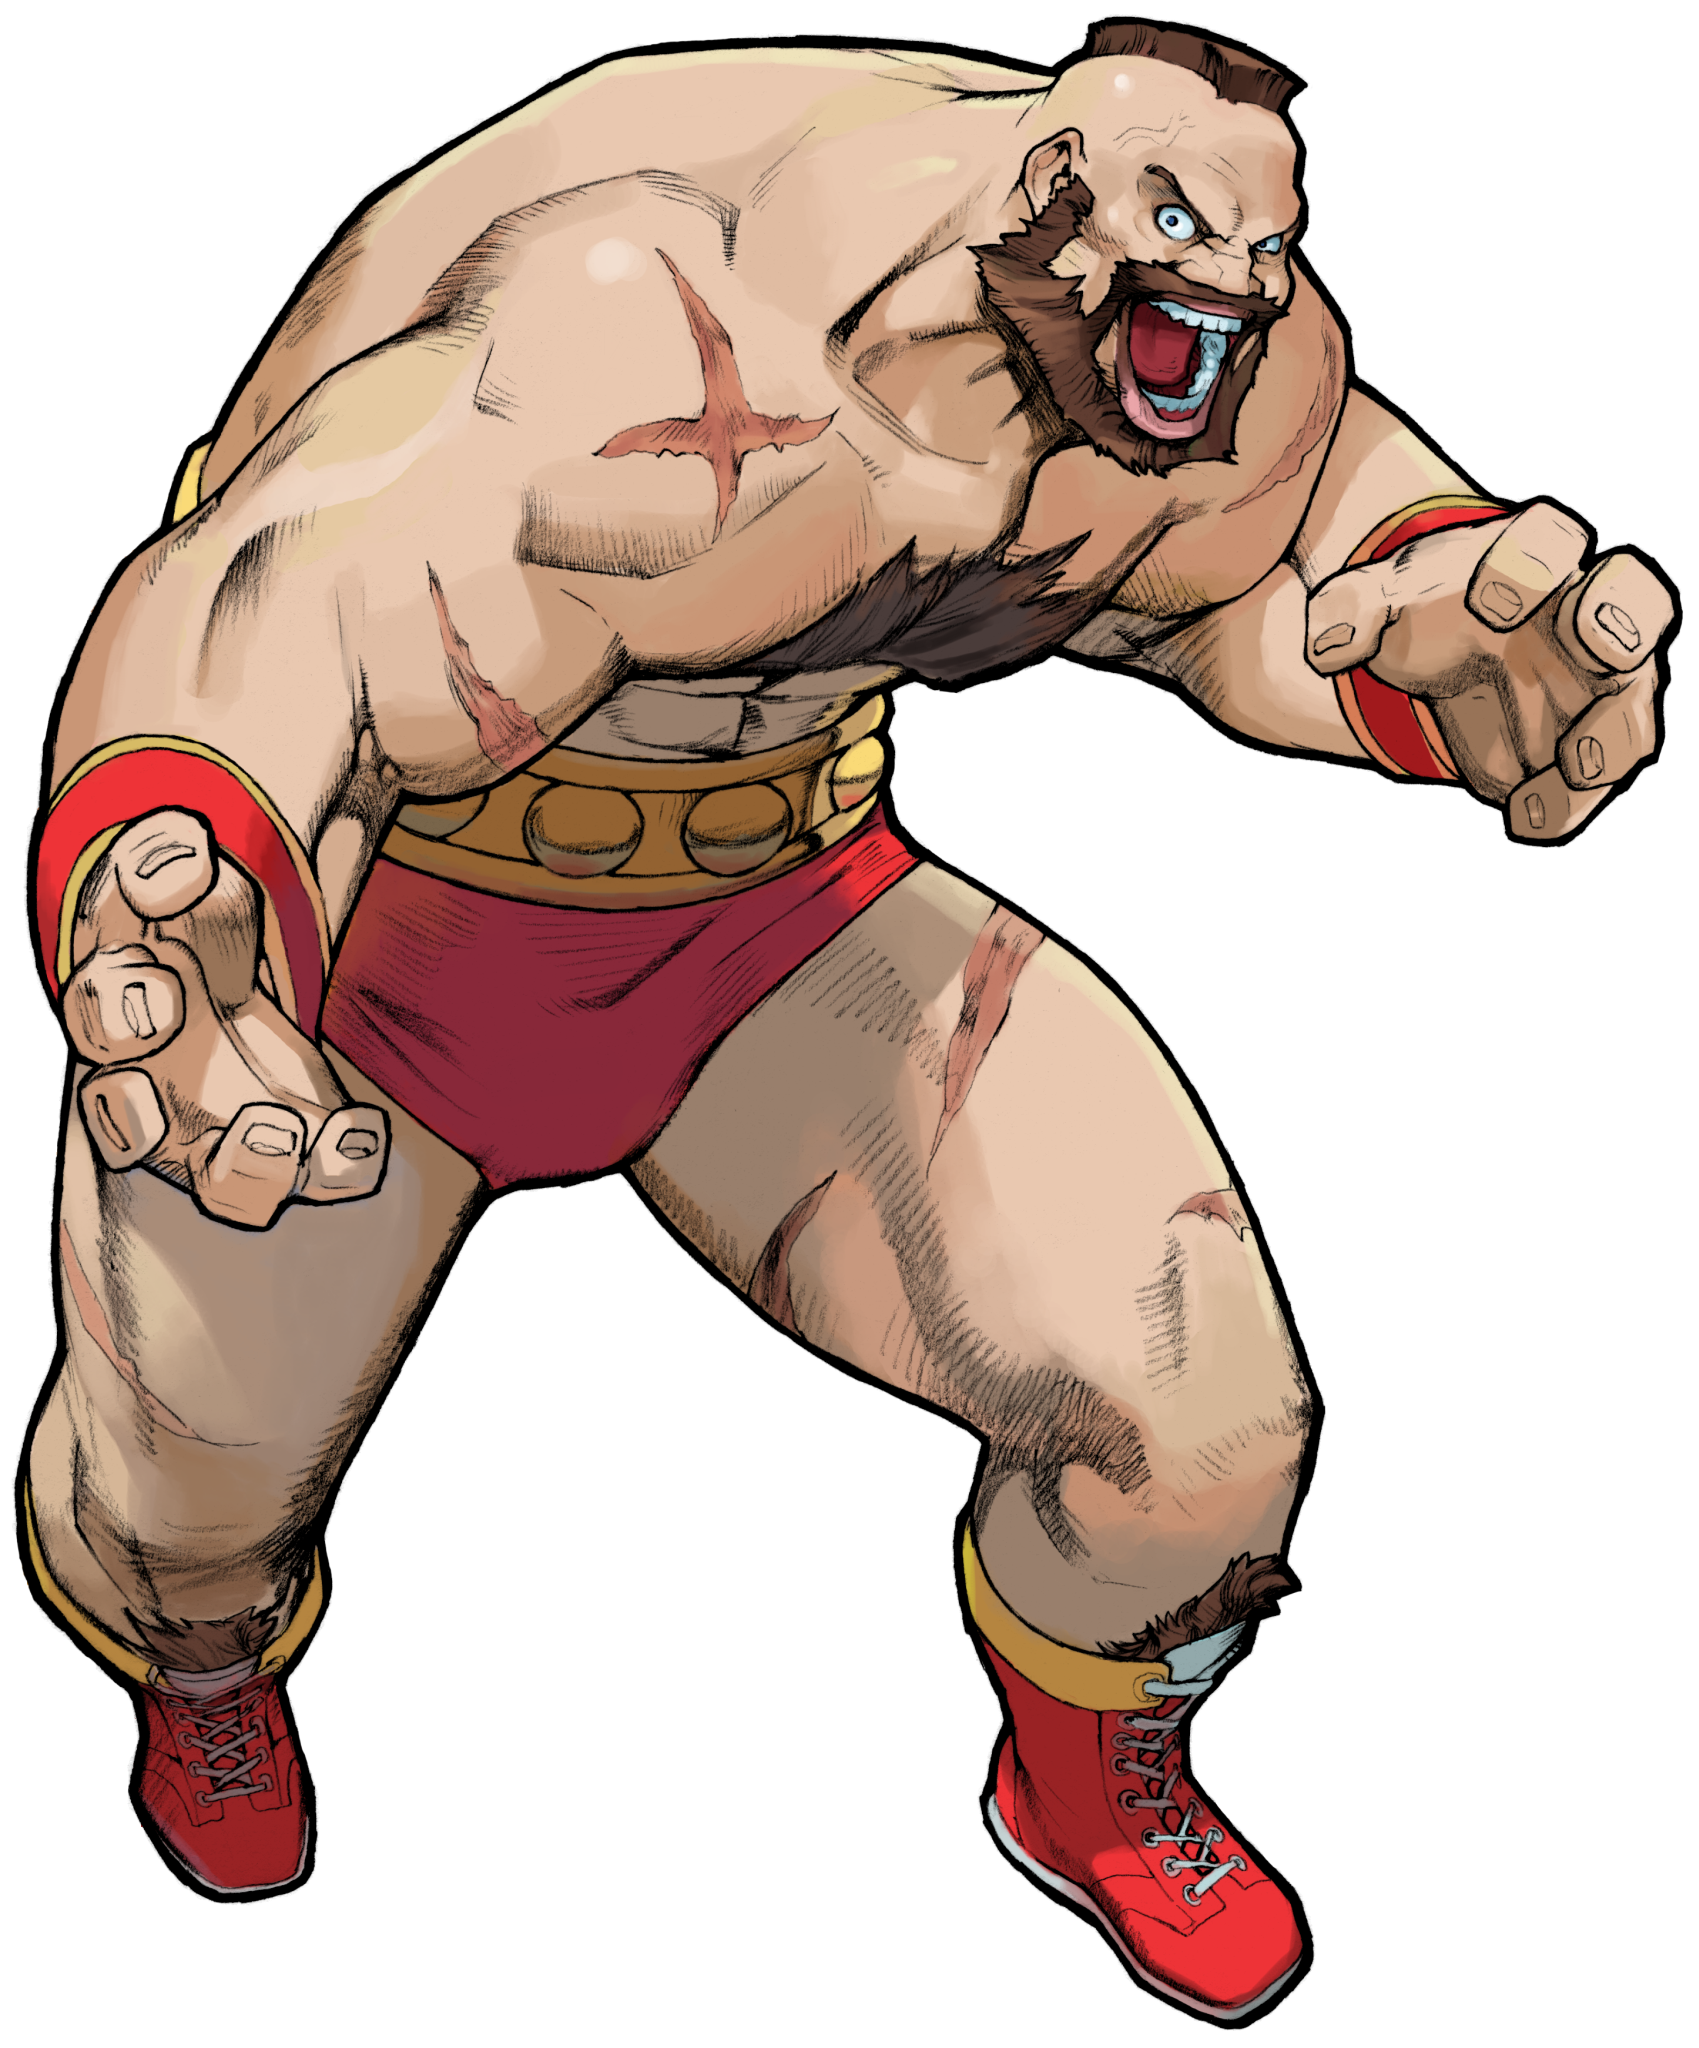 Street Fighter II - The World Warrior - Zangief (Arcade) 